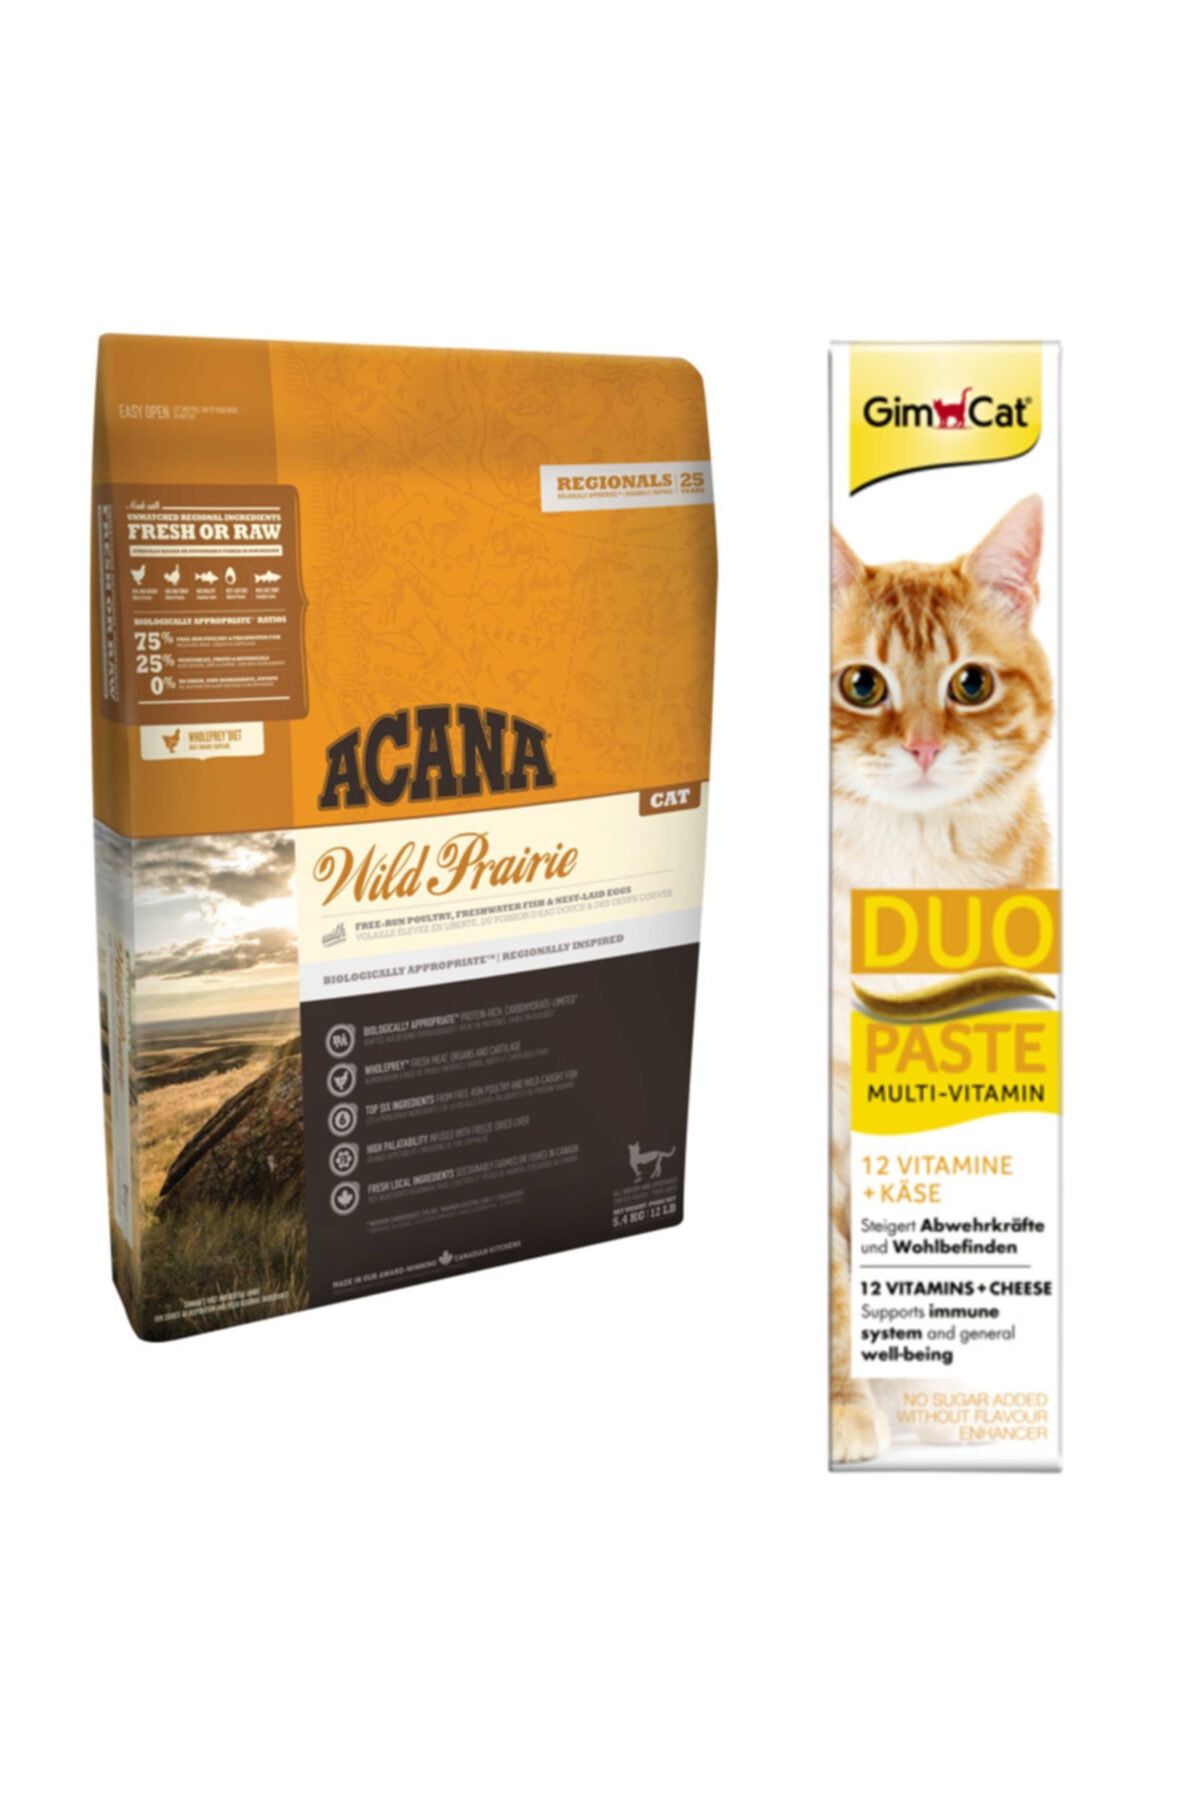 Acana Wild Prairie Kedi Maması 1,8 Kg + Gimcat Duo Paste Peynirli Multi Vitamin 50gr